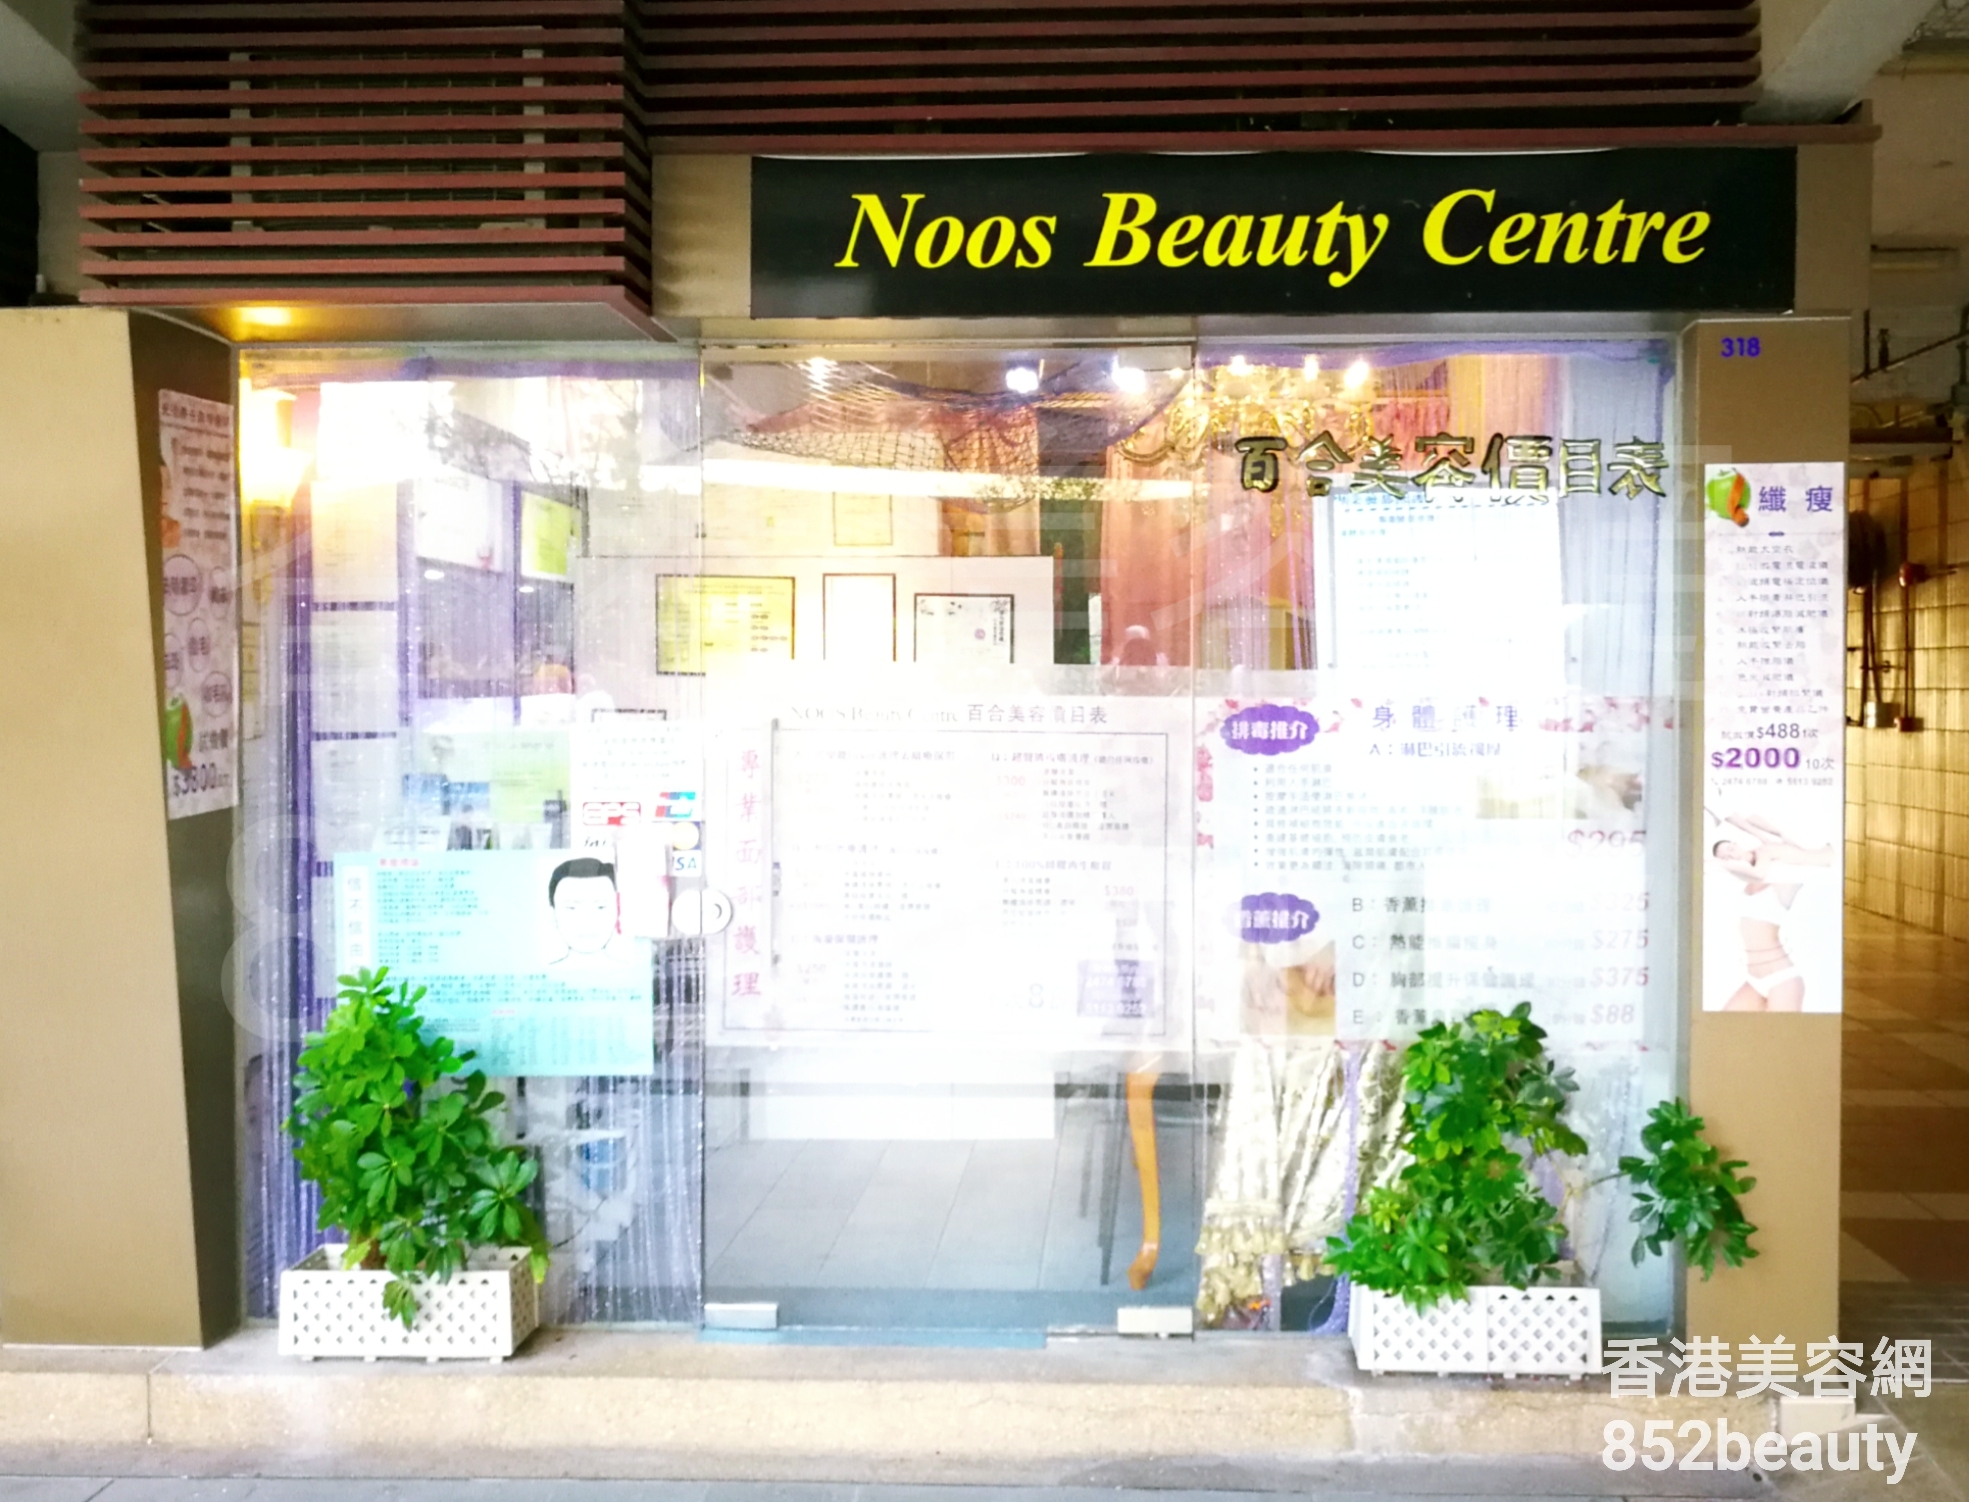 醫學美容: Noos Beauty Centre